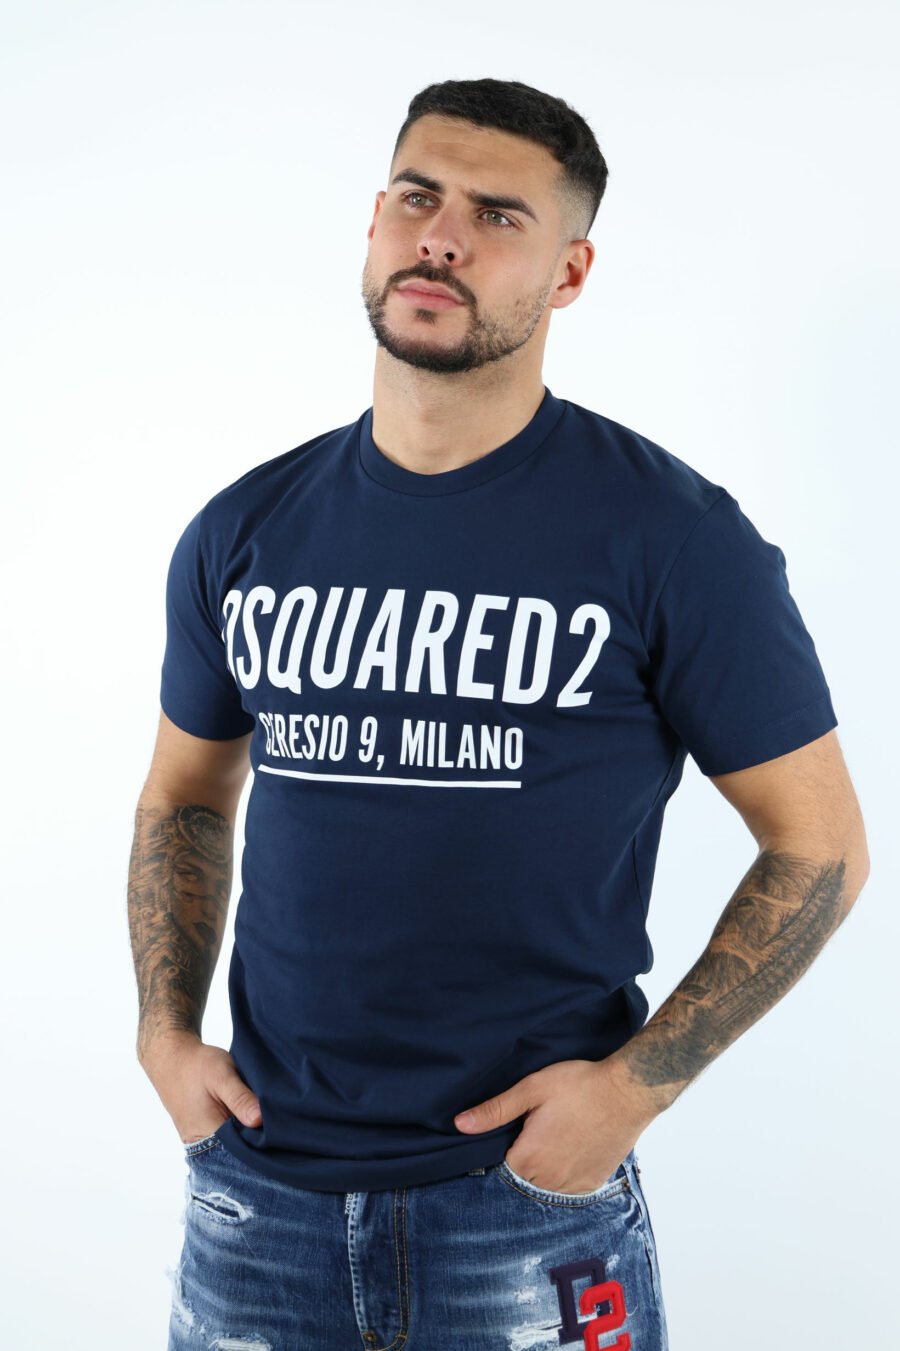 T-shirt bleu foncé avec maxilogo "ceresio 9, milano" - 106847